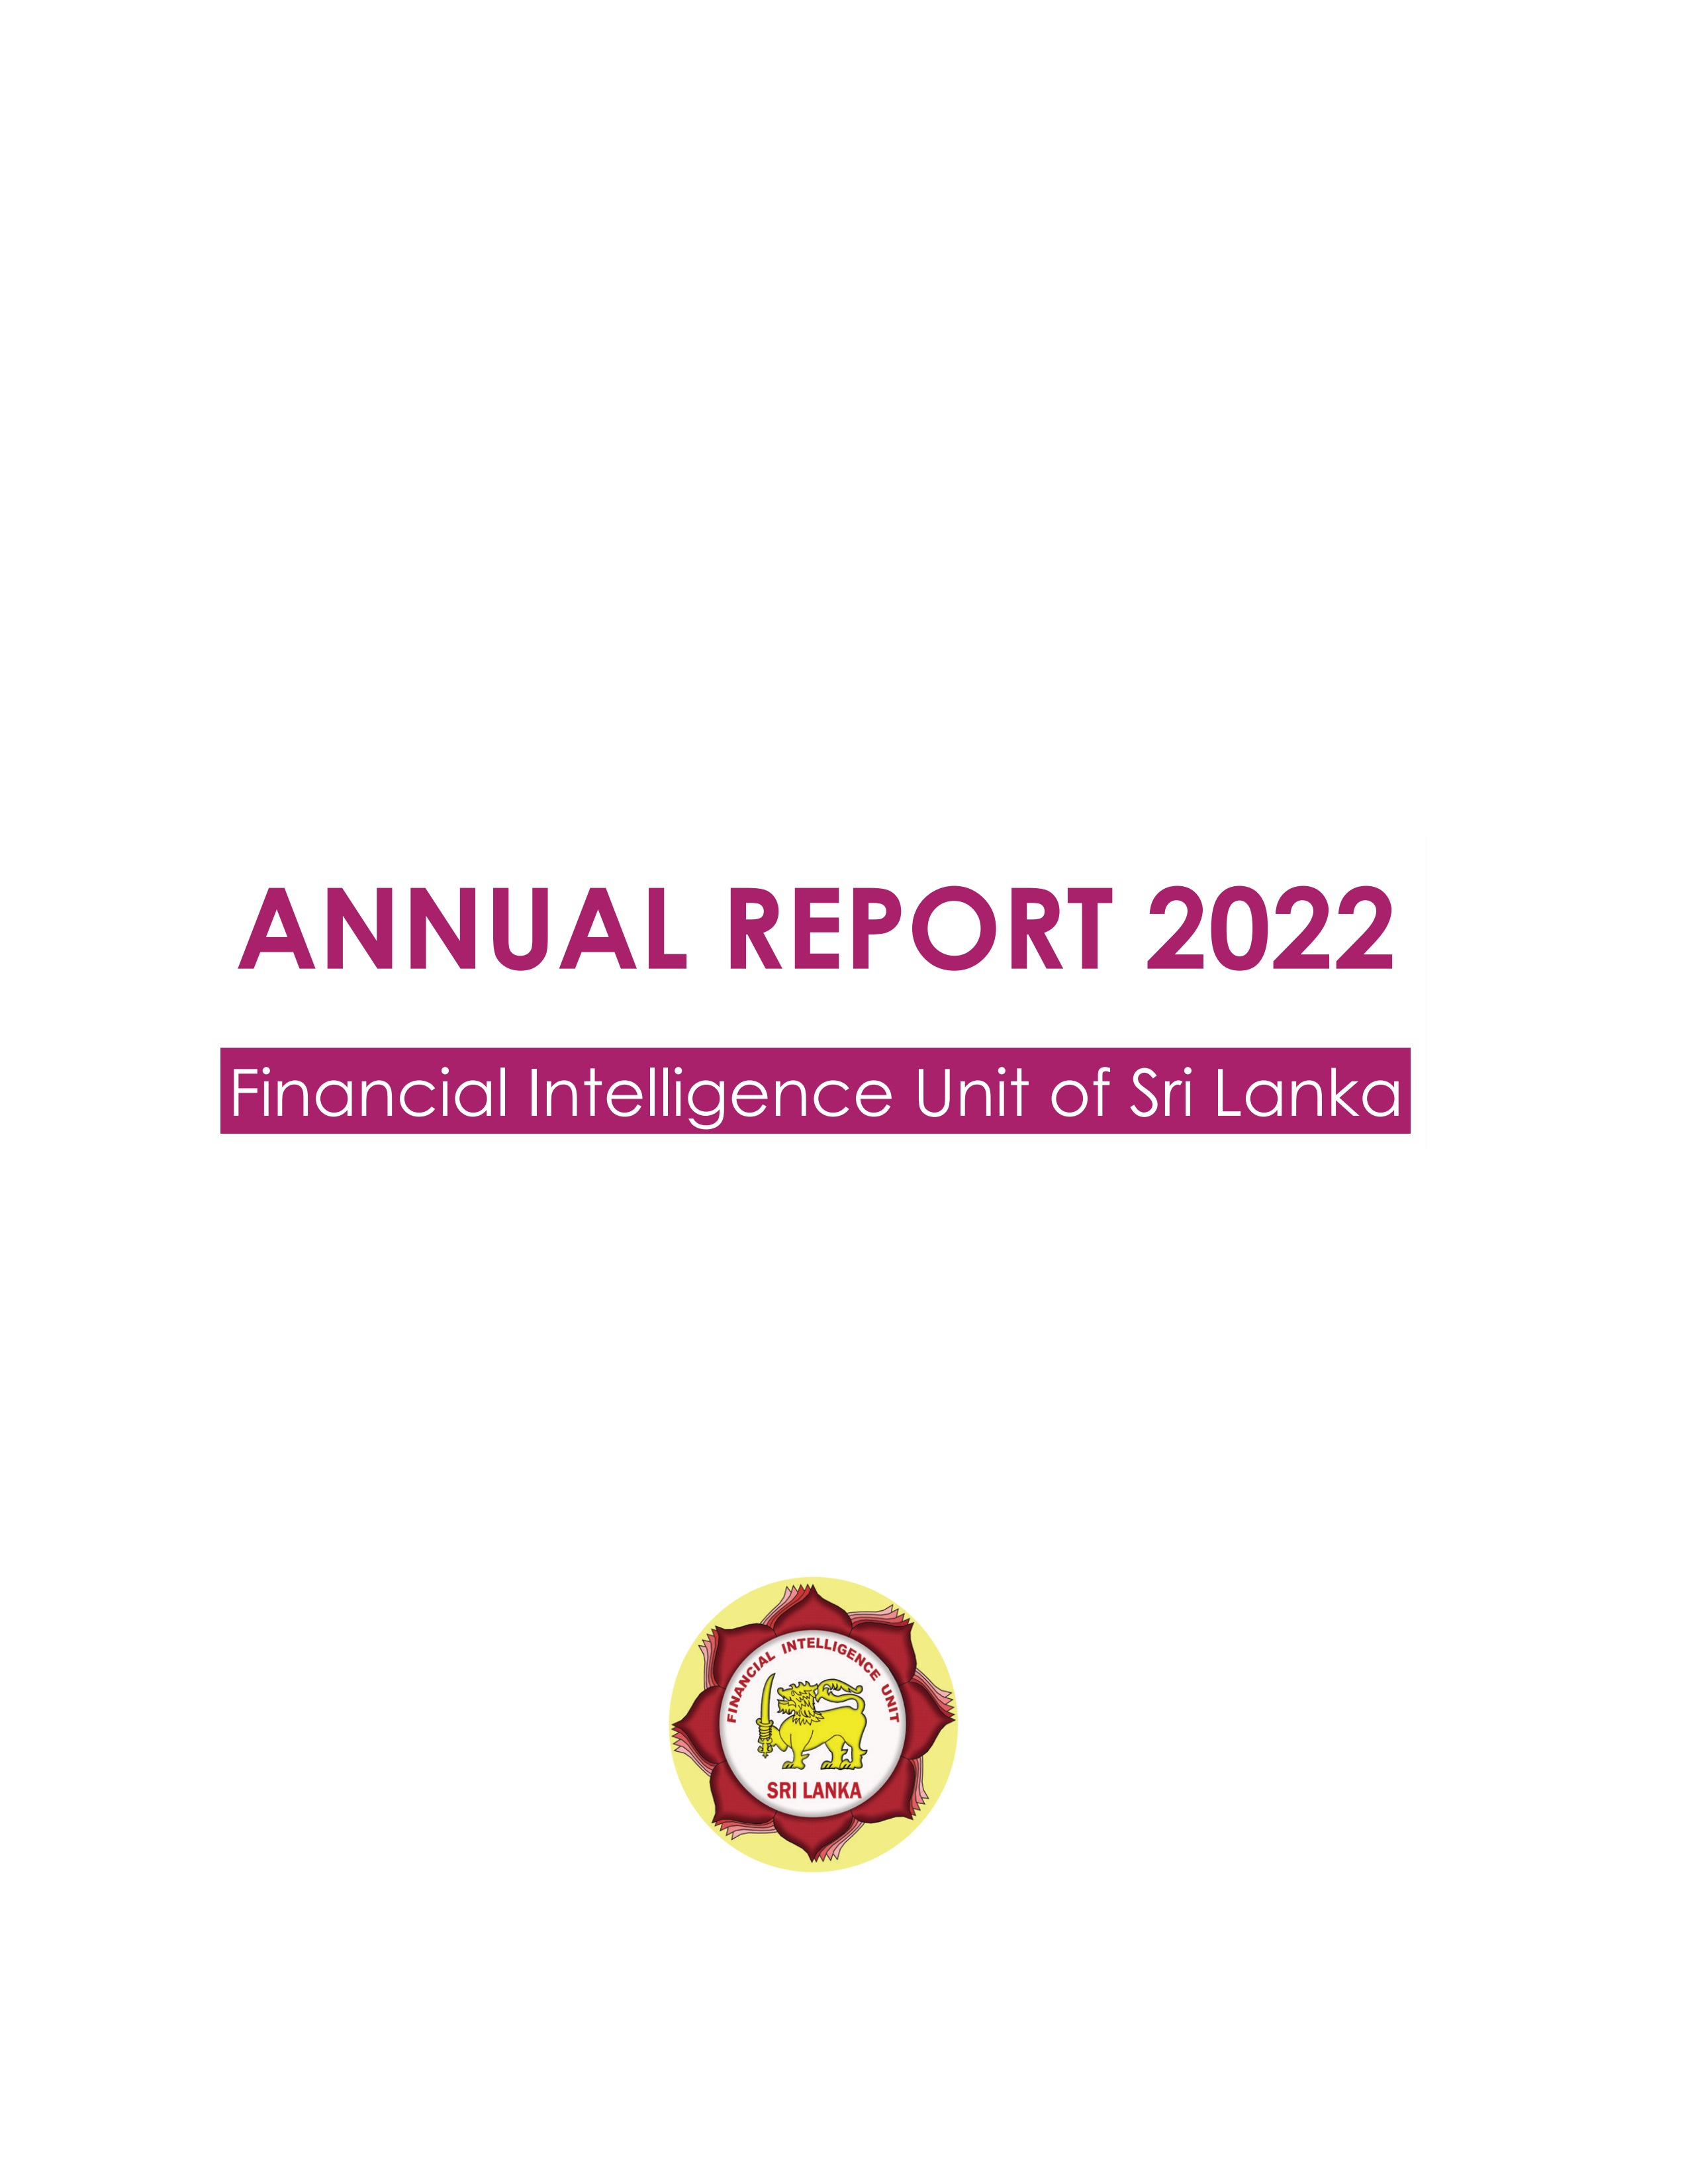 FIU Annual Report 2022